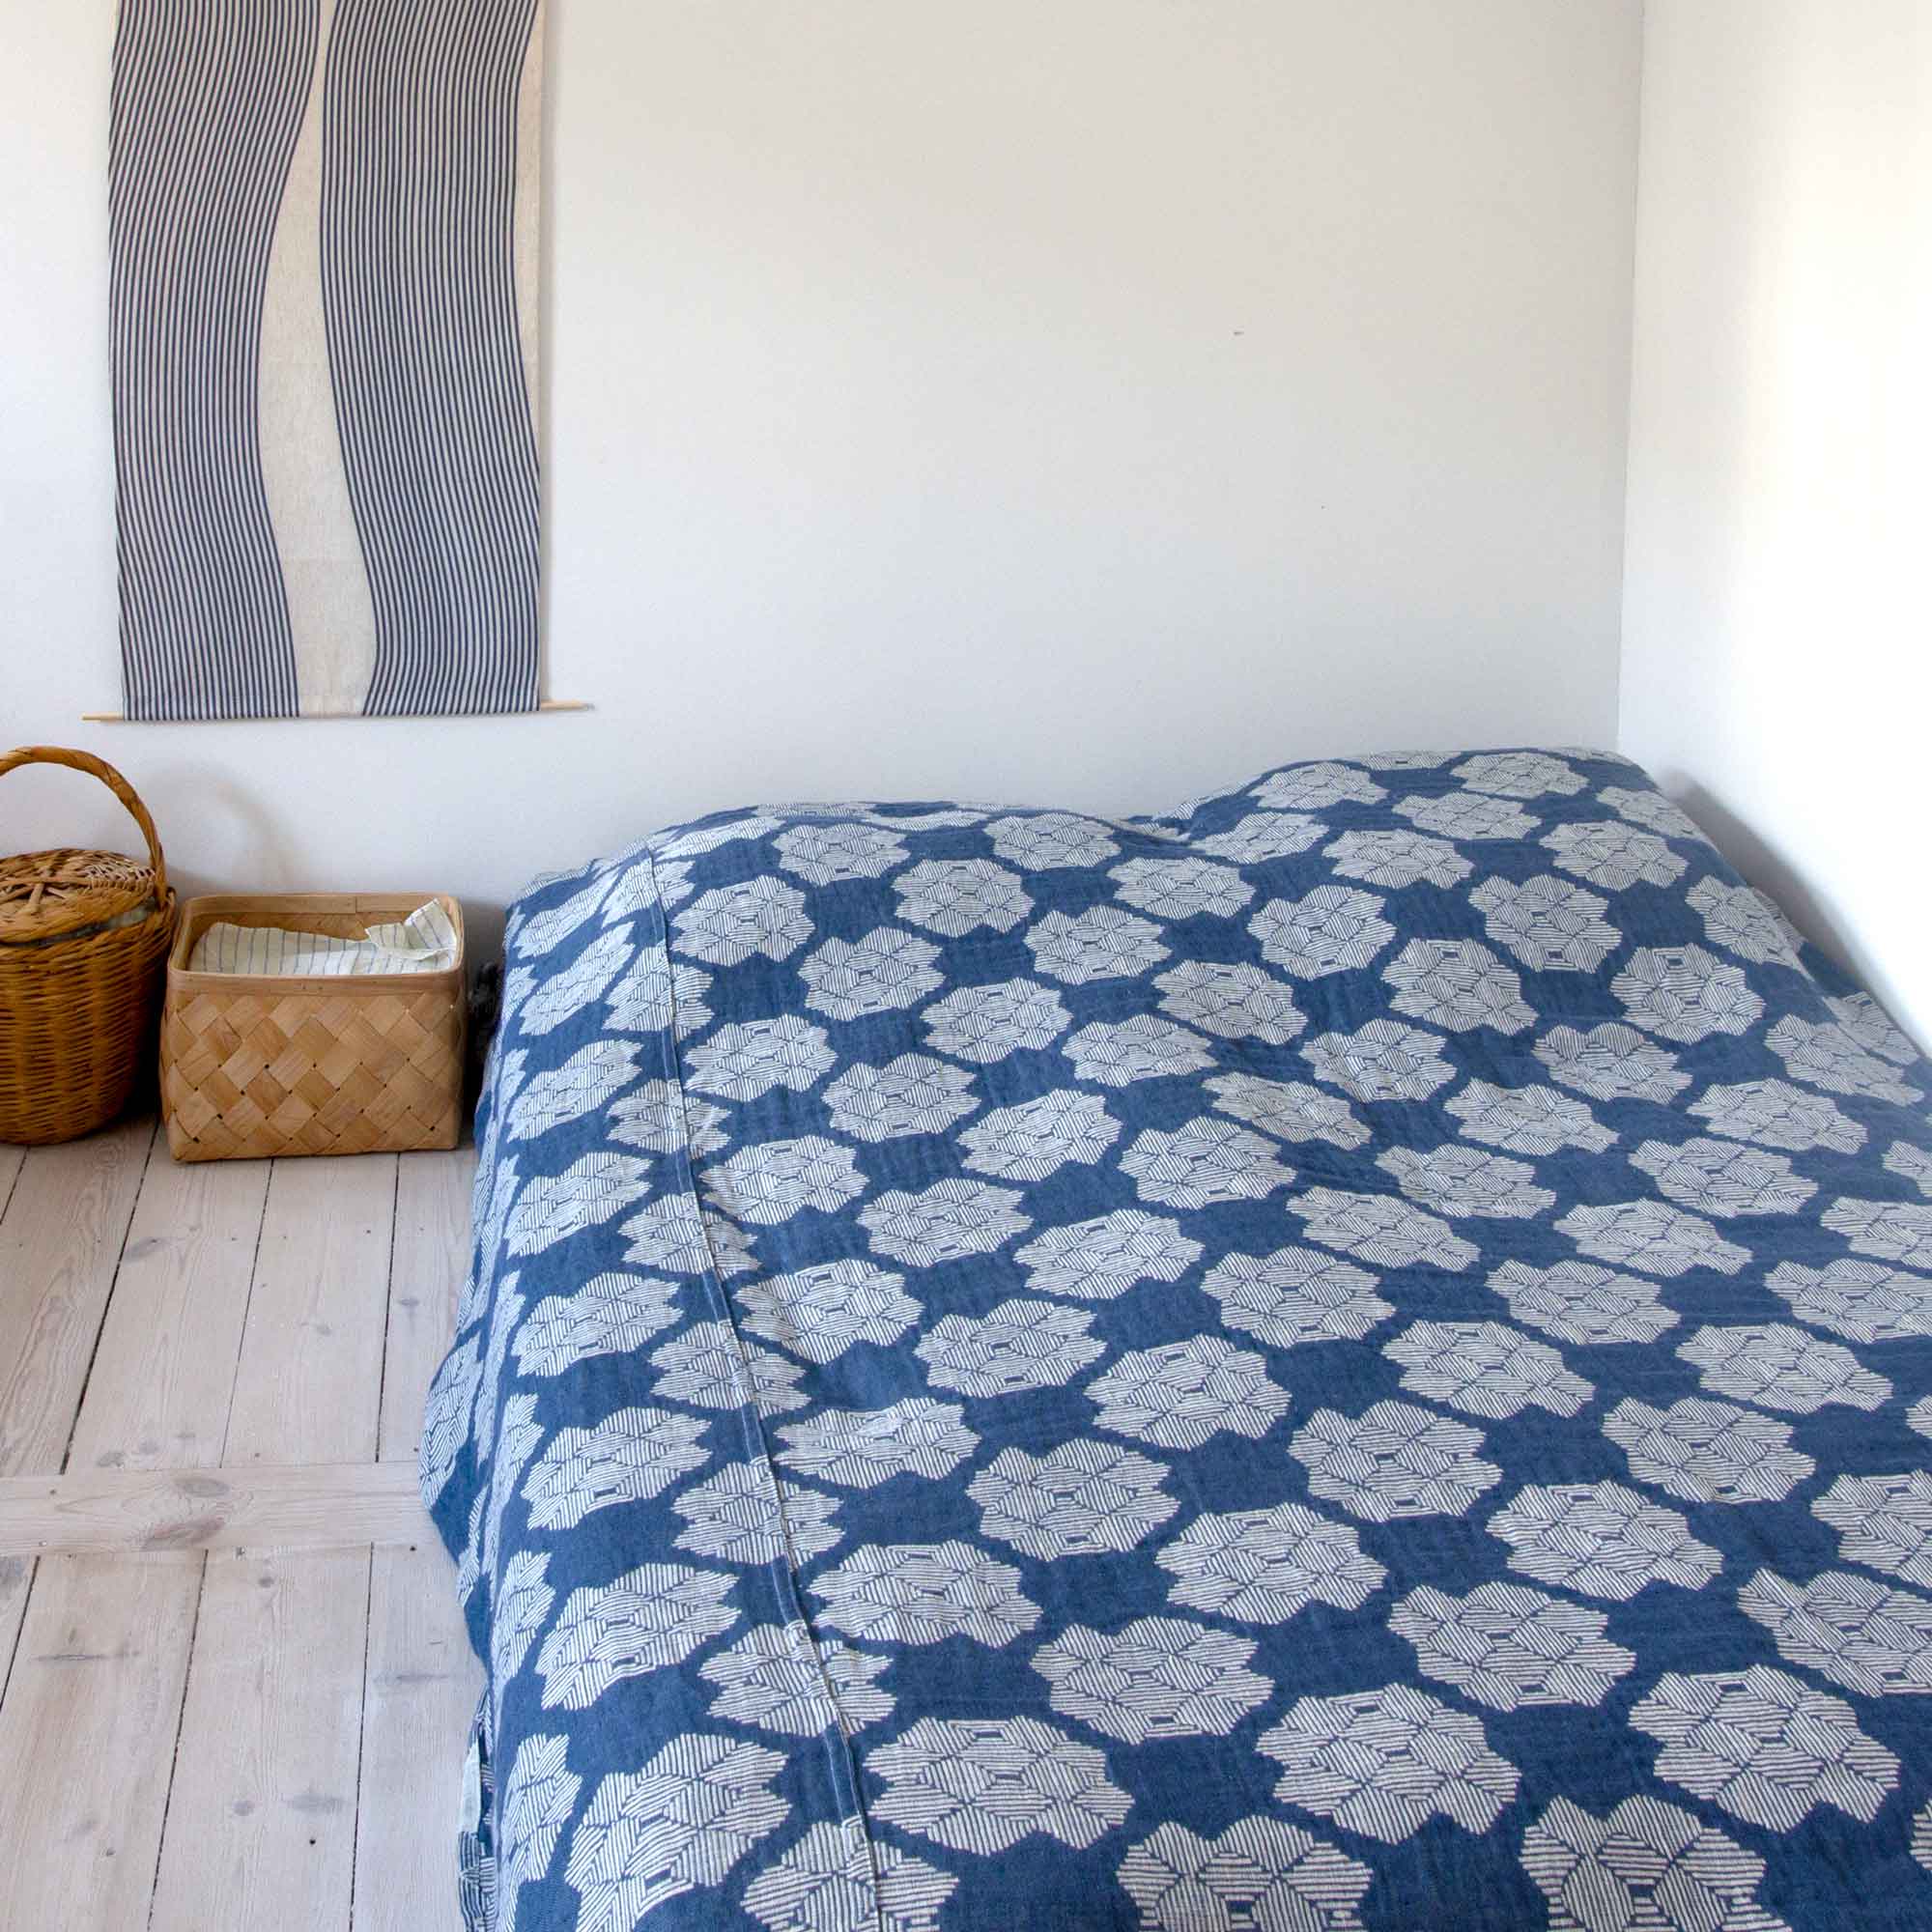 bed spread in 100% linen desert roses pattern, design Anne Rosenberg, RosenbergCph